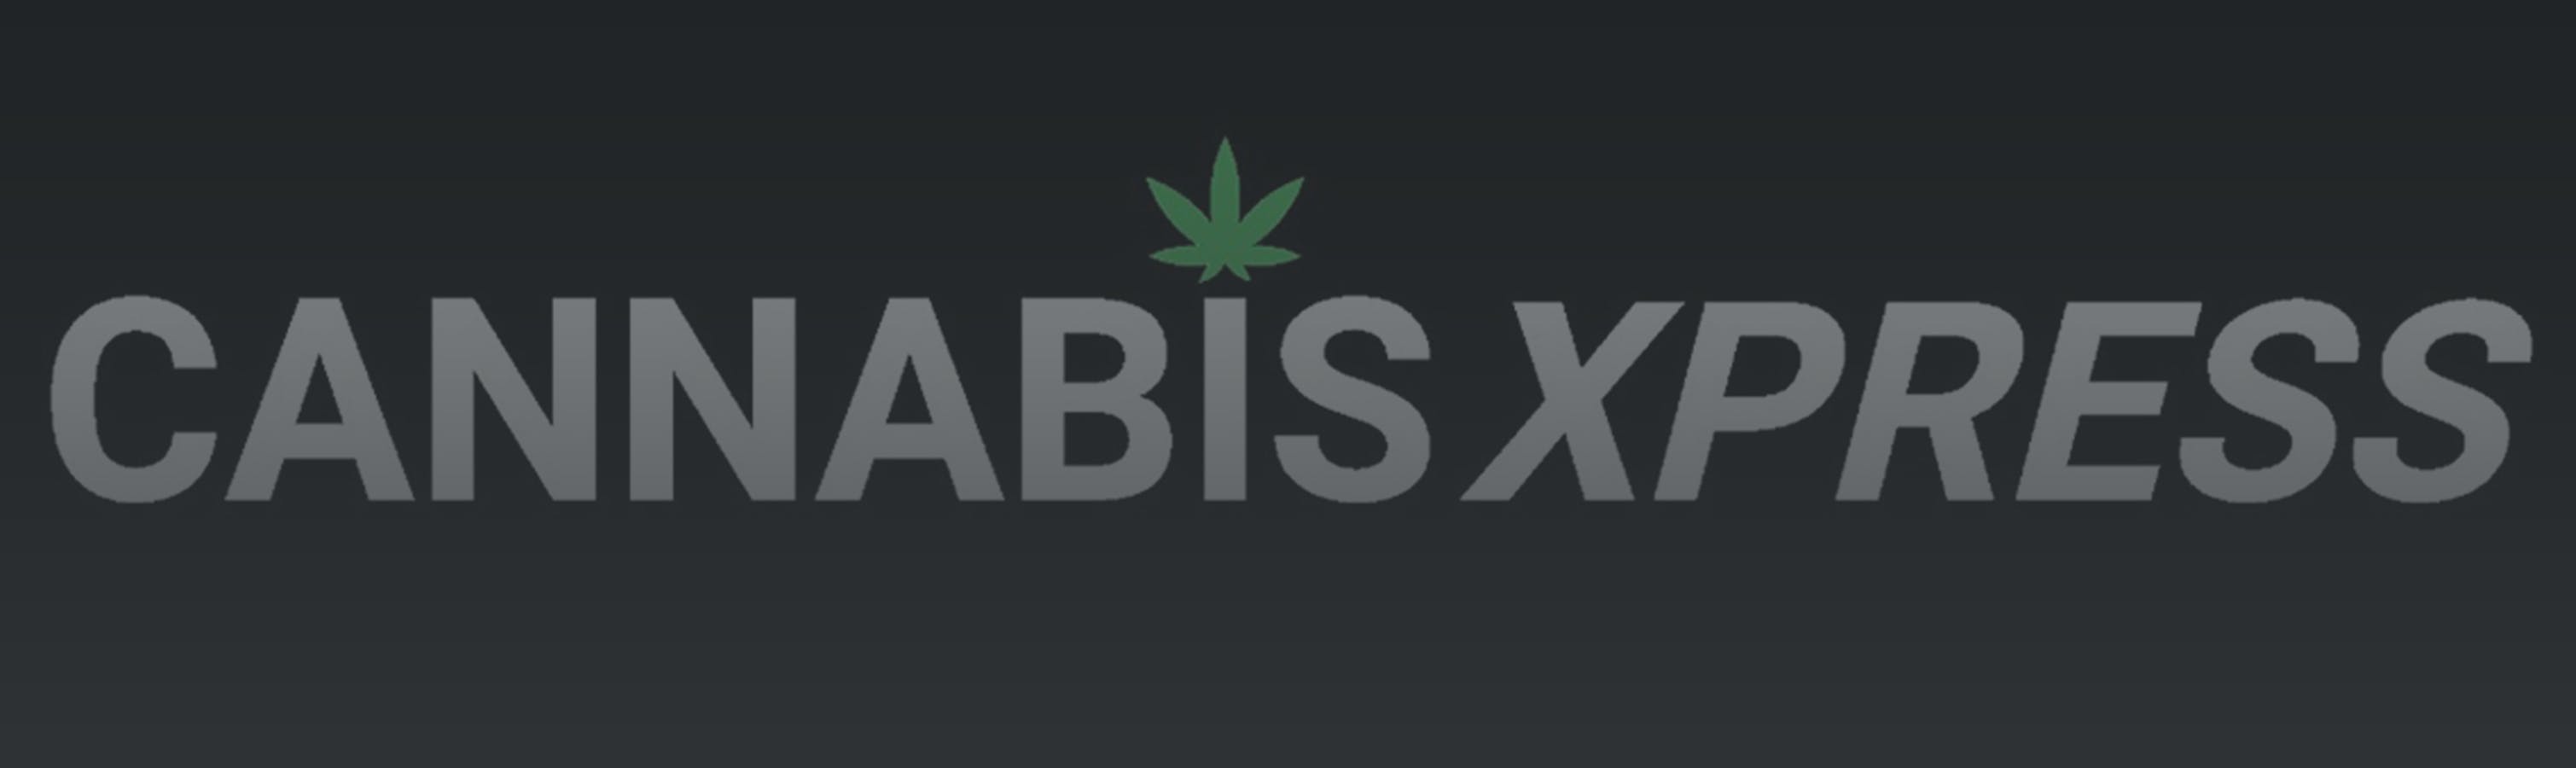 Cannabis Store CANNABIS XPRESS (Wasaga Beach) - 0